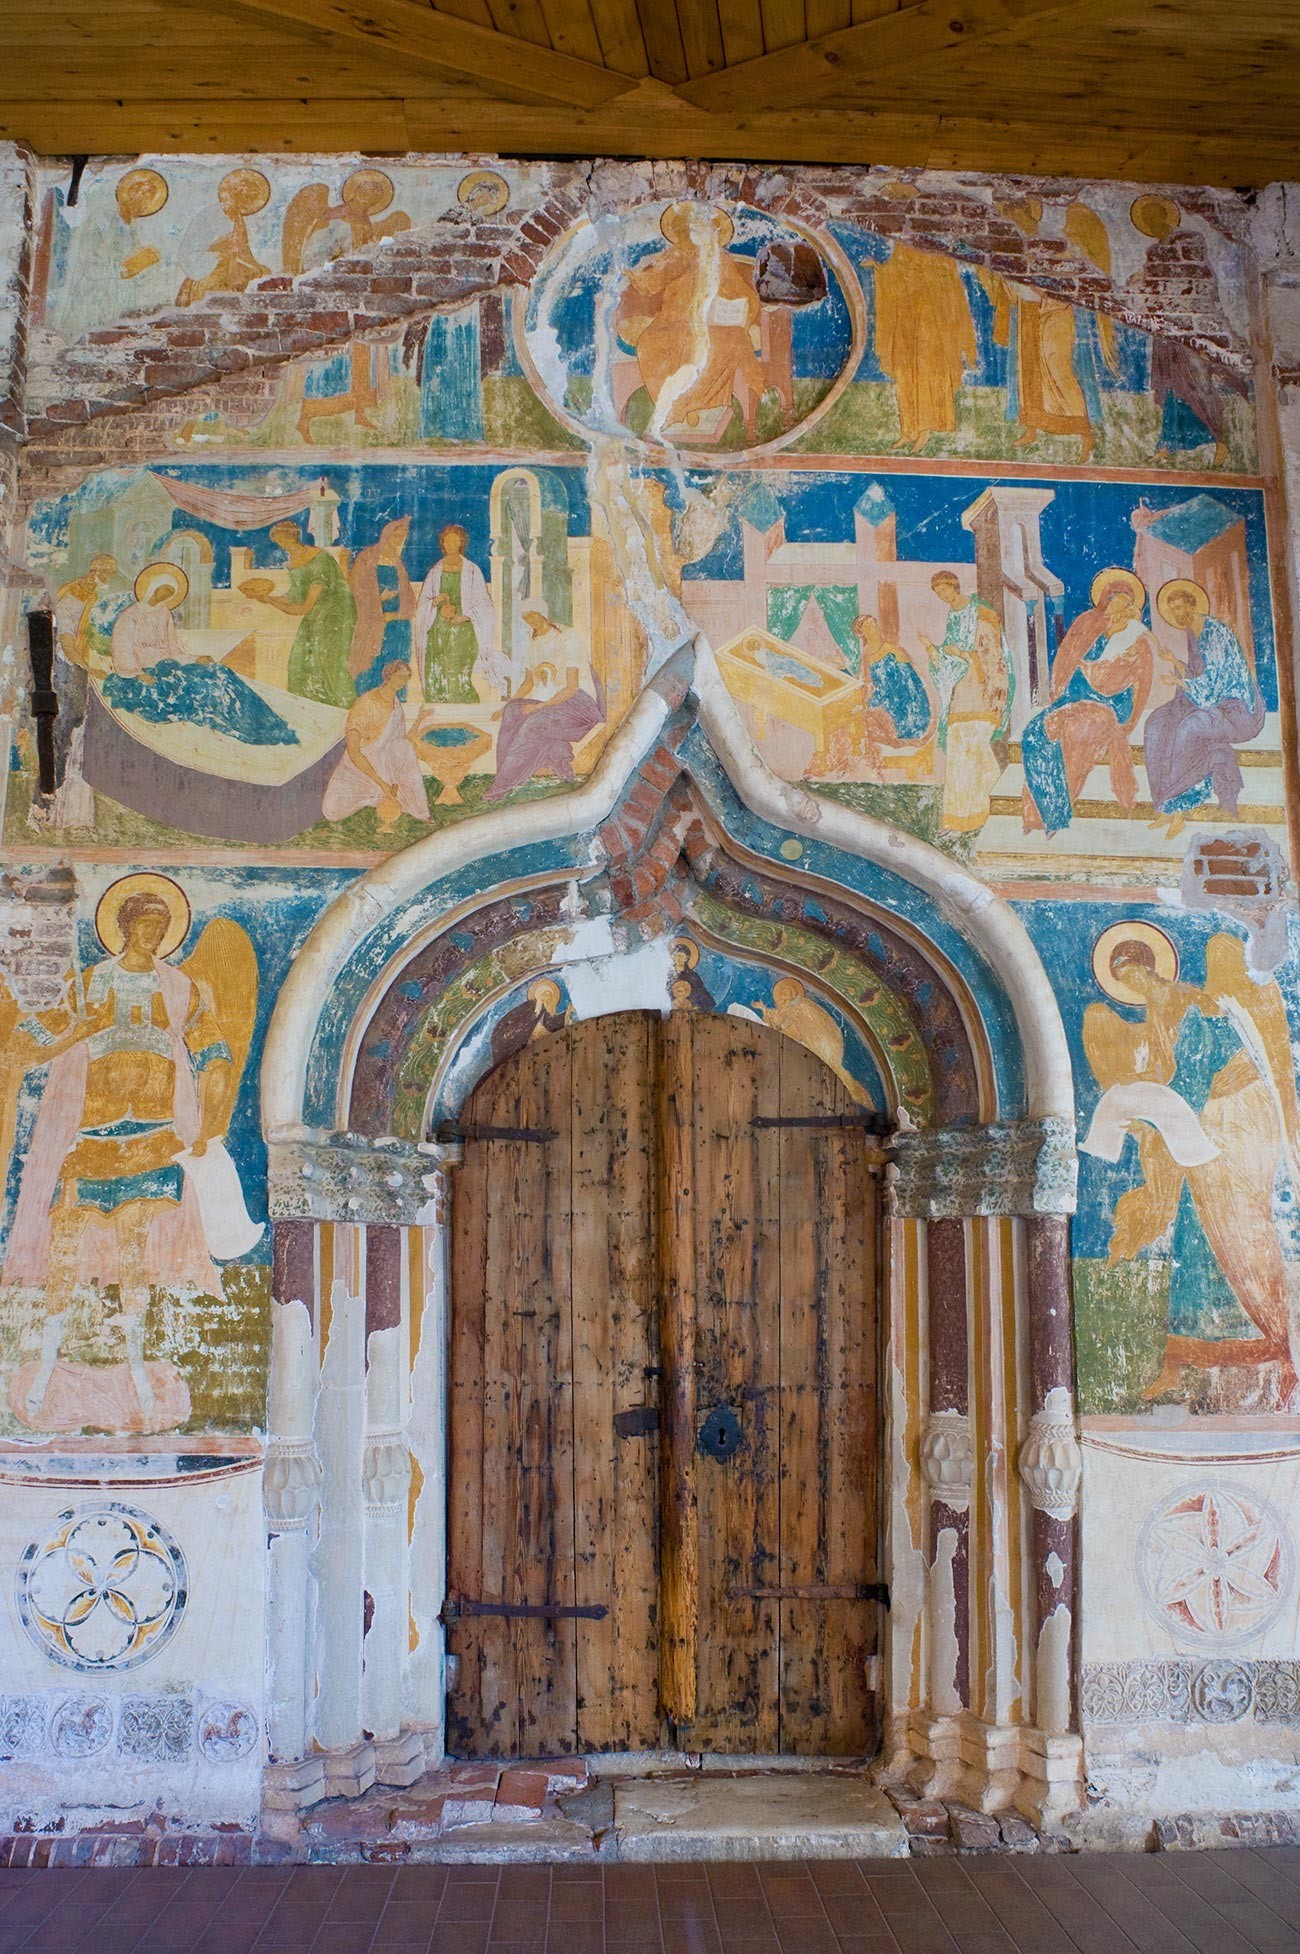 Katedrala Rojstva Device Marije, zahodna fasada. Glavni portal z nadangeloma Mihaelom (levo) in Gabrijelom. Zgoraj: prizori iz rojstva Device Marije. 1. junij 2014
